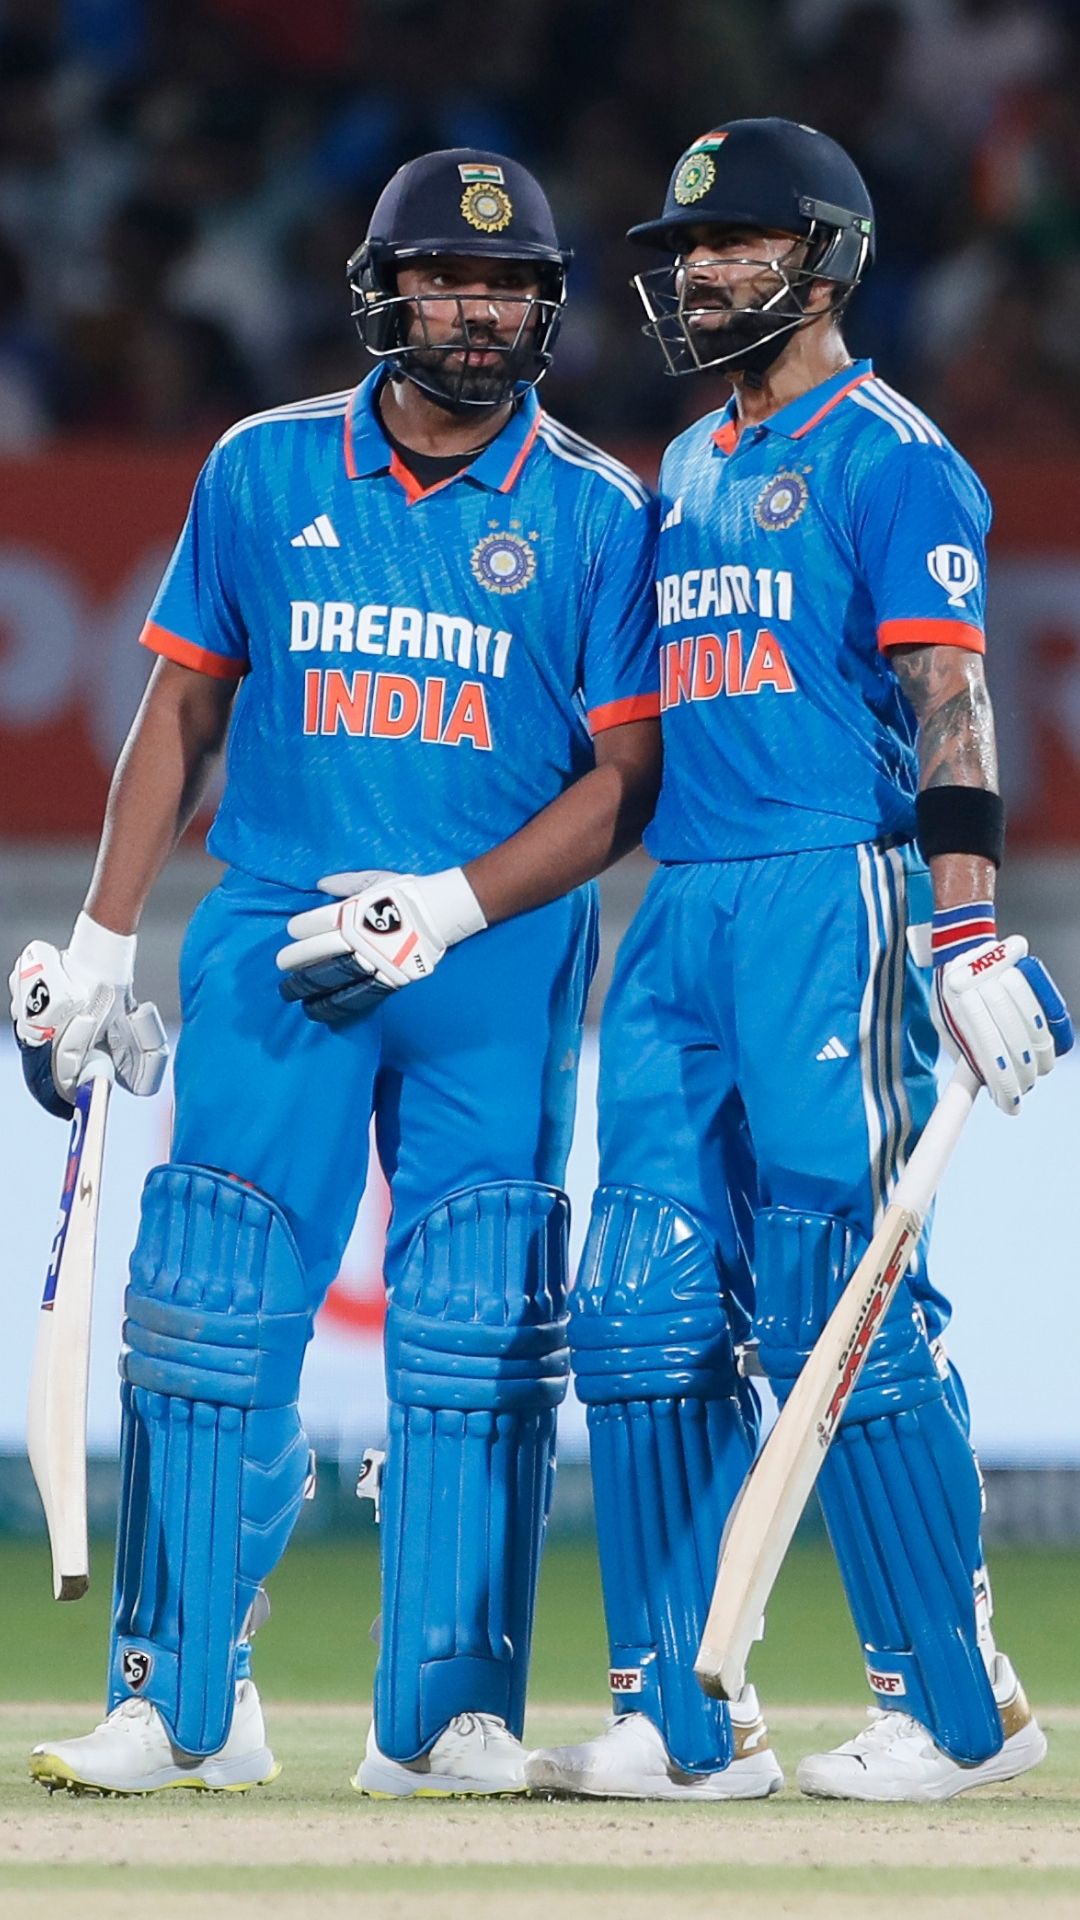 T20 World Cup में सबसे ज्यादा मैच खेलने वाले भारतीय खिलाड़ियों की लिस्ट